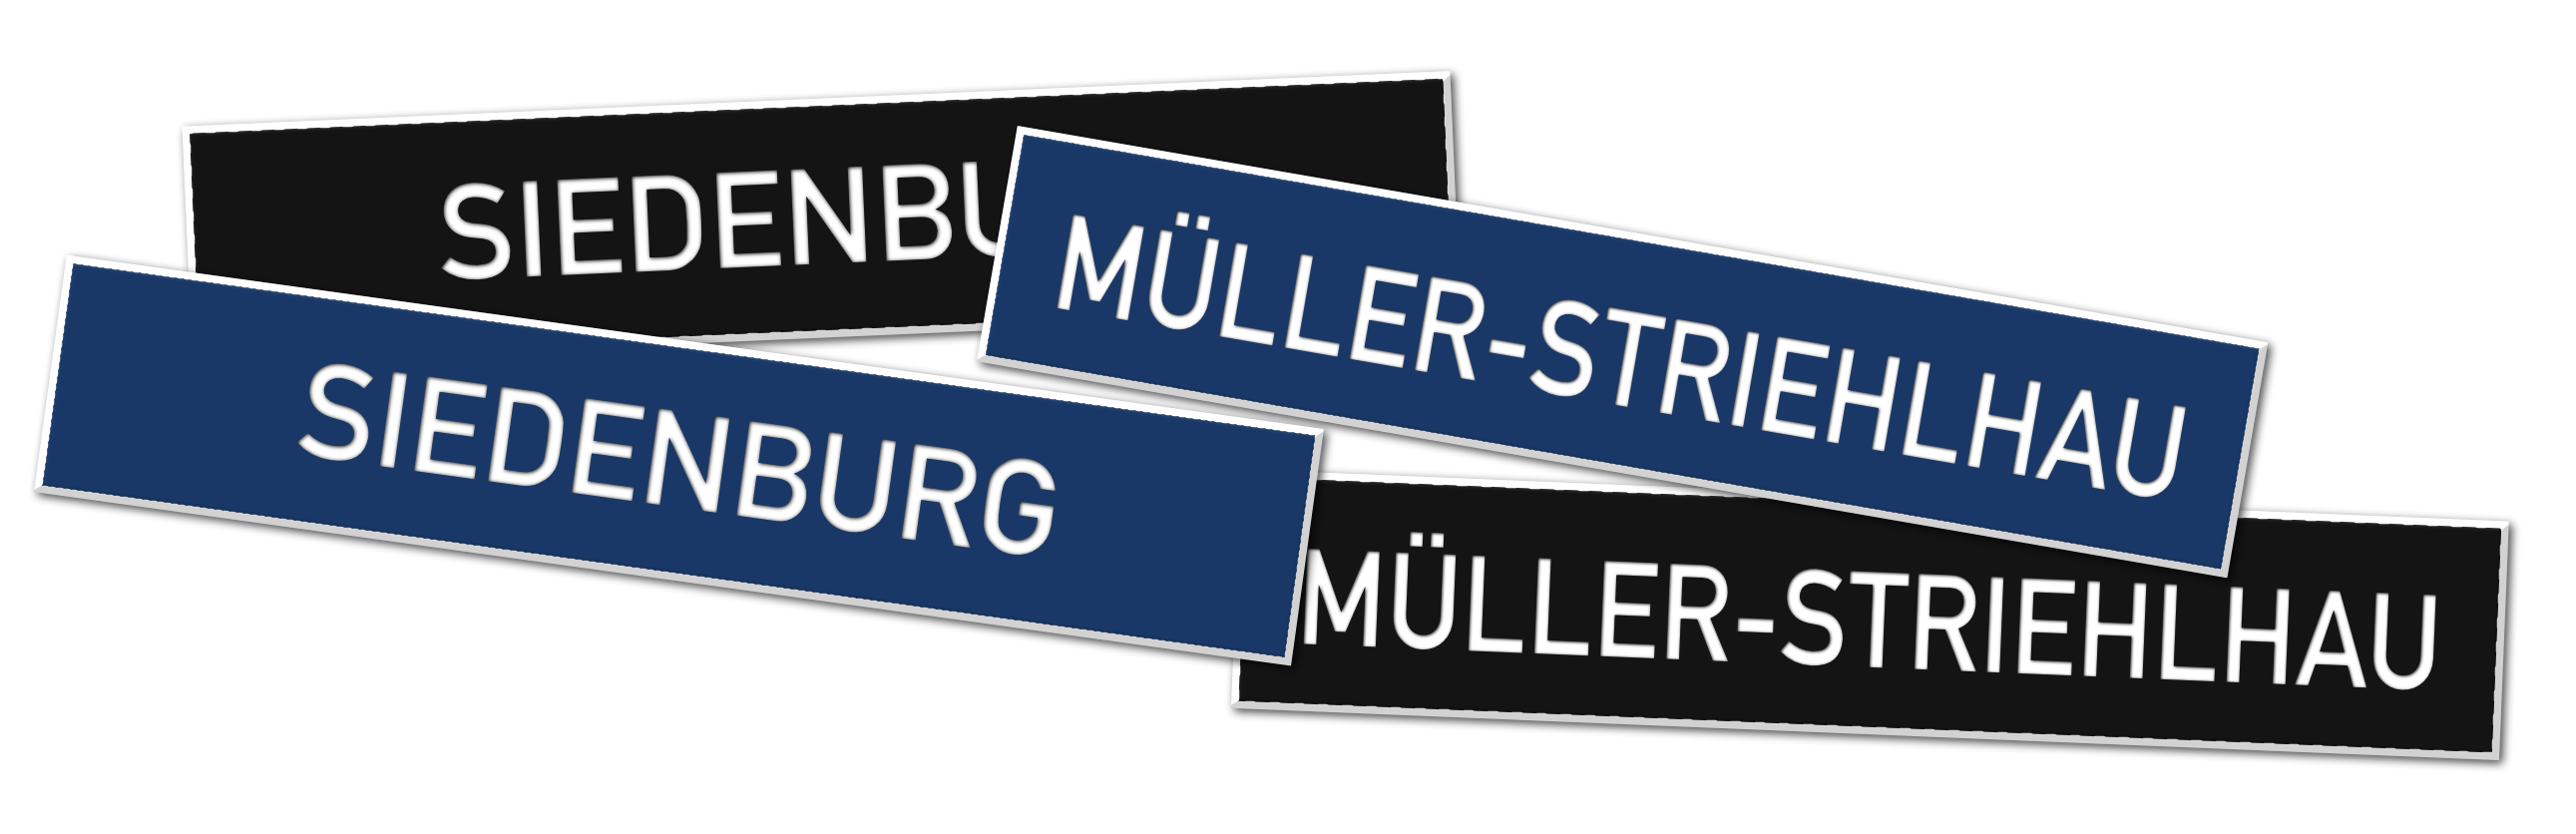 Bundeswehr Namensschilder in blau und schwarz